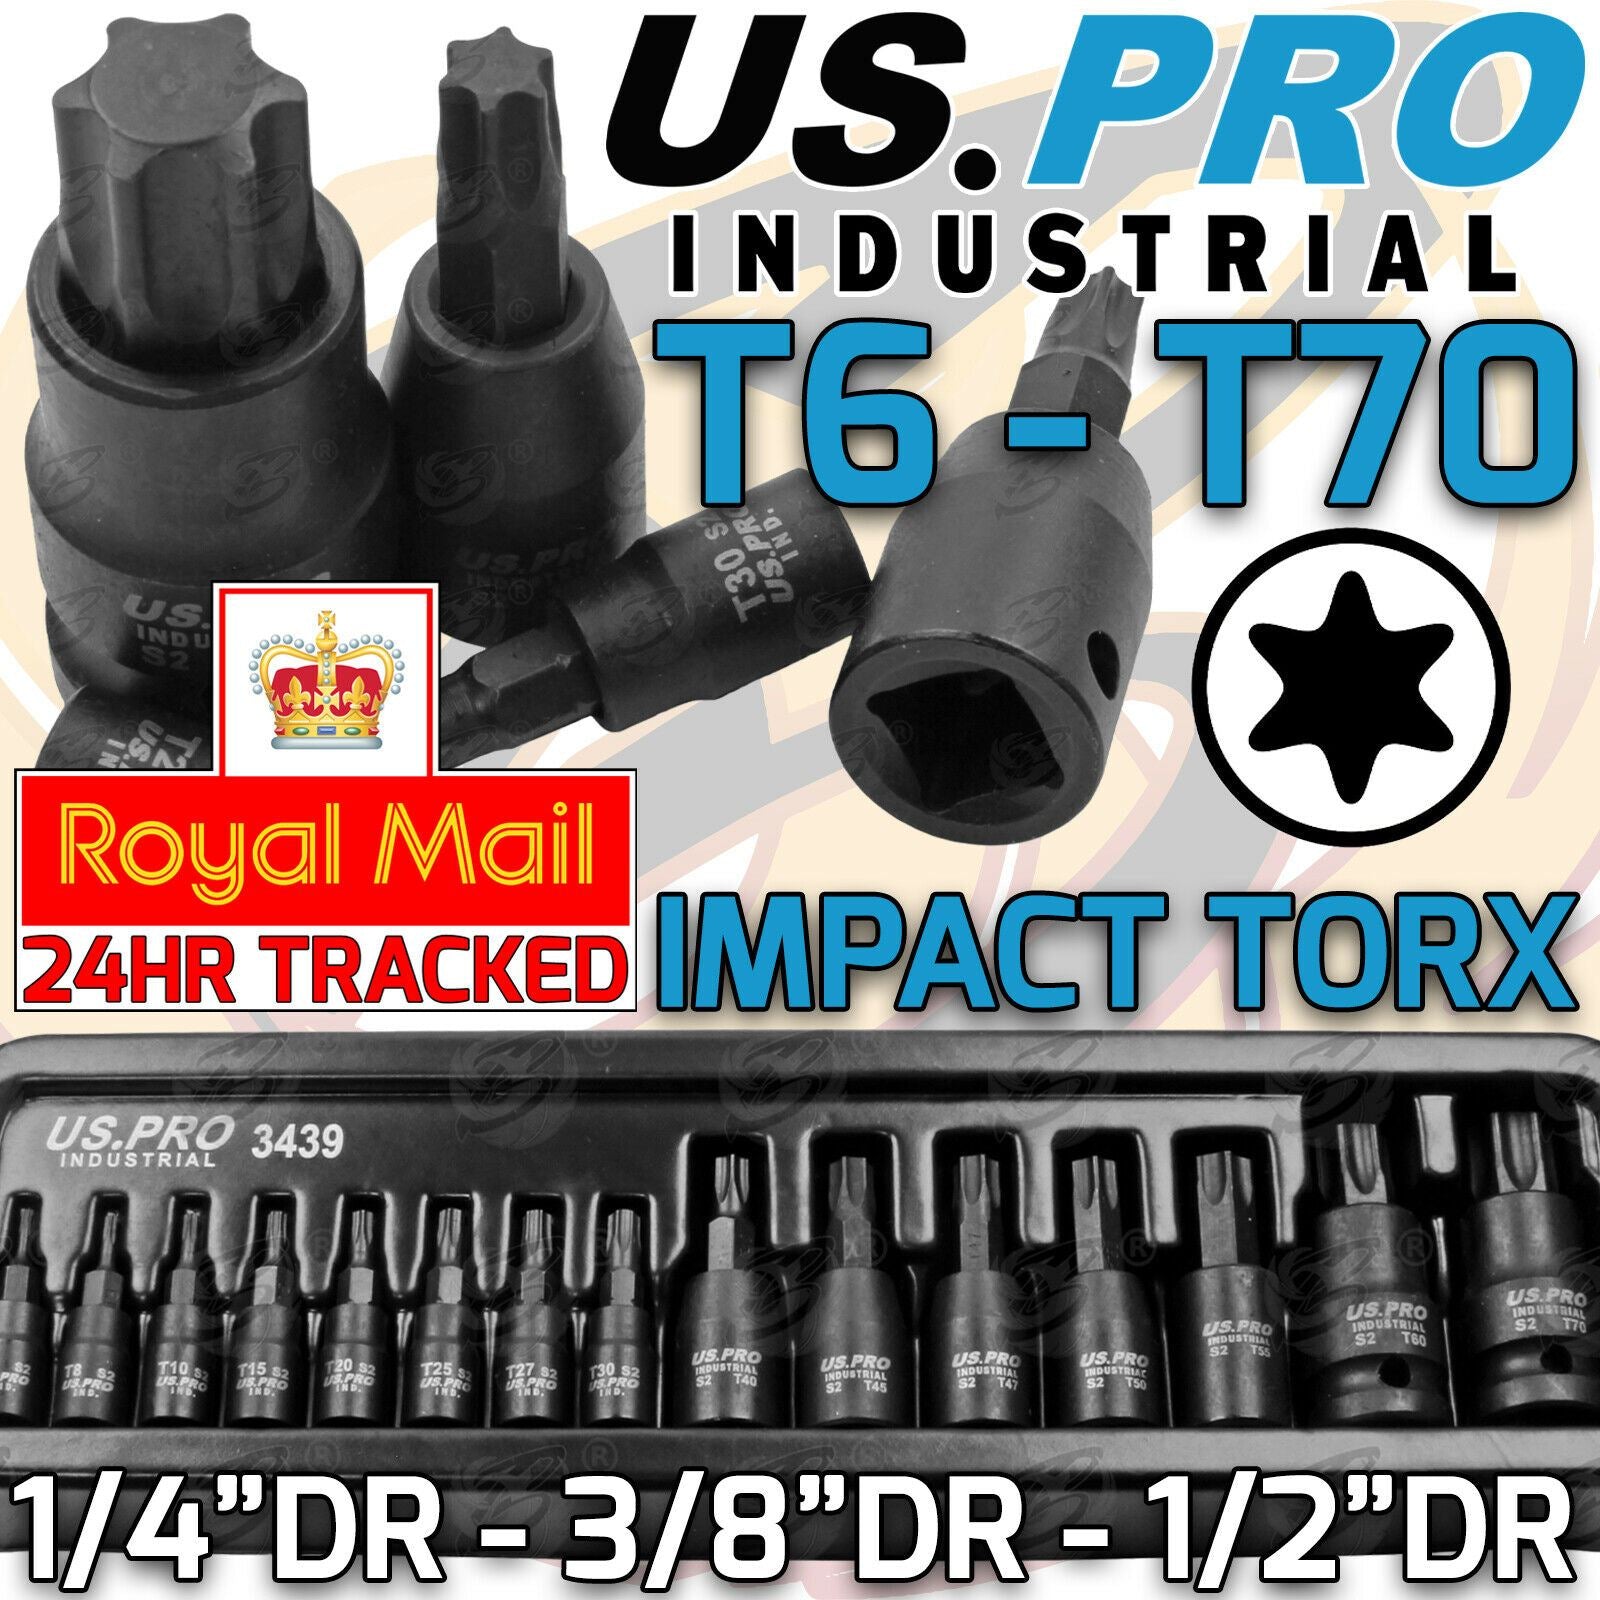 US PRO INDUSTRIAL 15PCS 1/4" & 3/8" & 1/2" DRIVE IMPACT TORX BIT SOCKETS T6 - T70